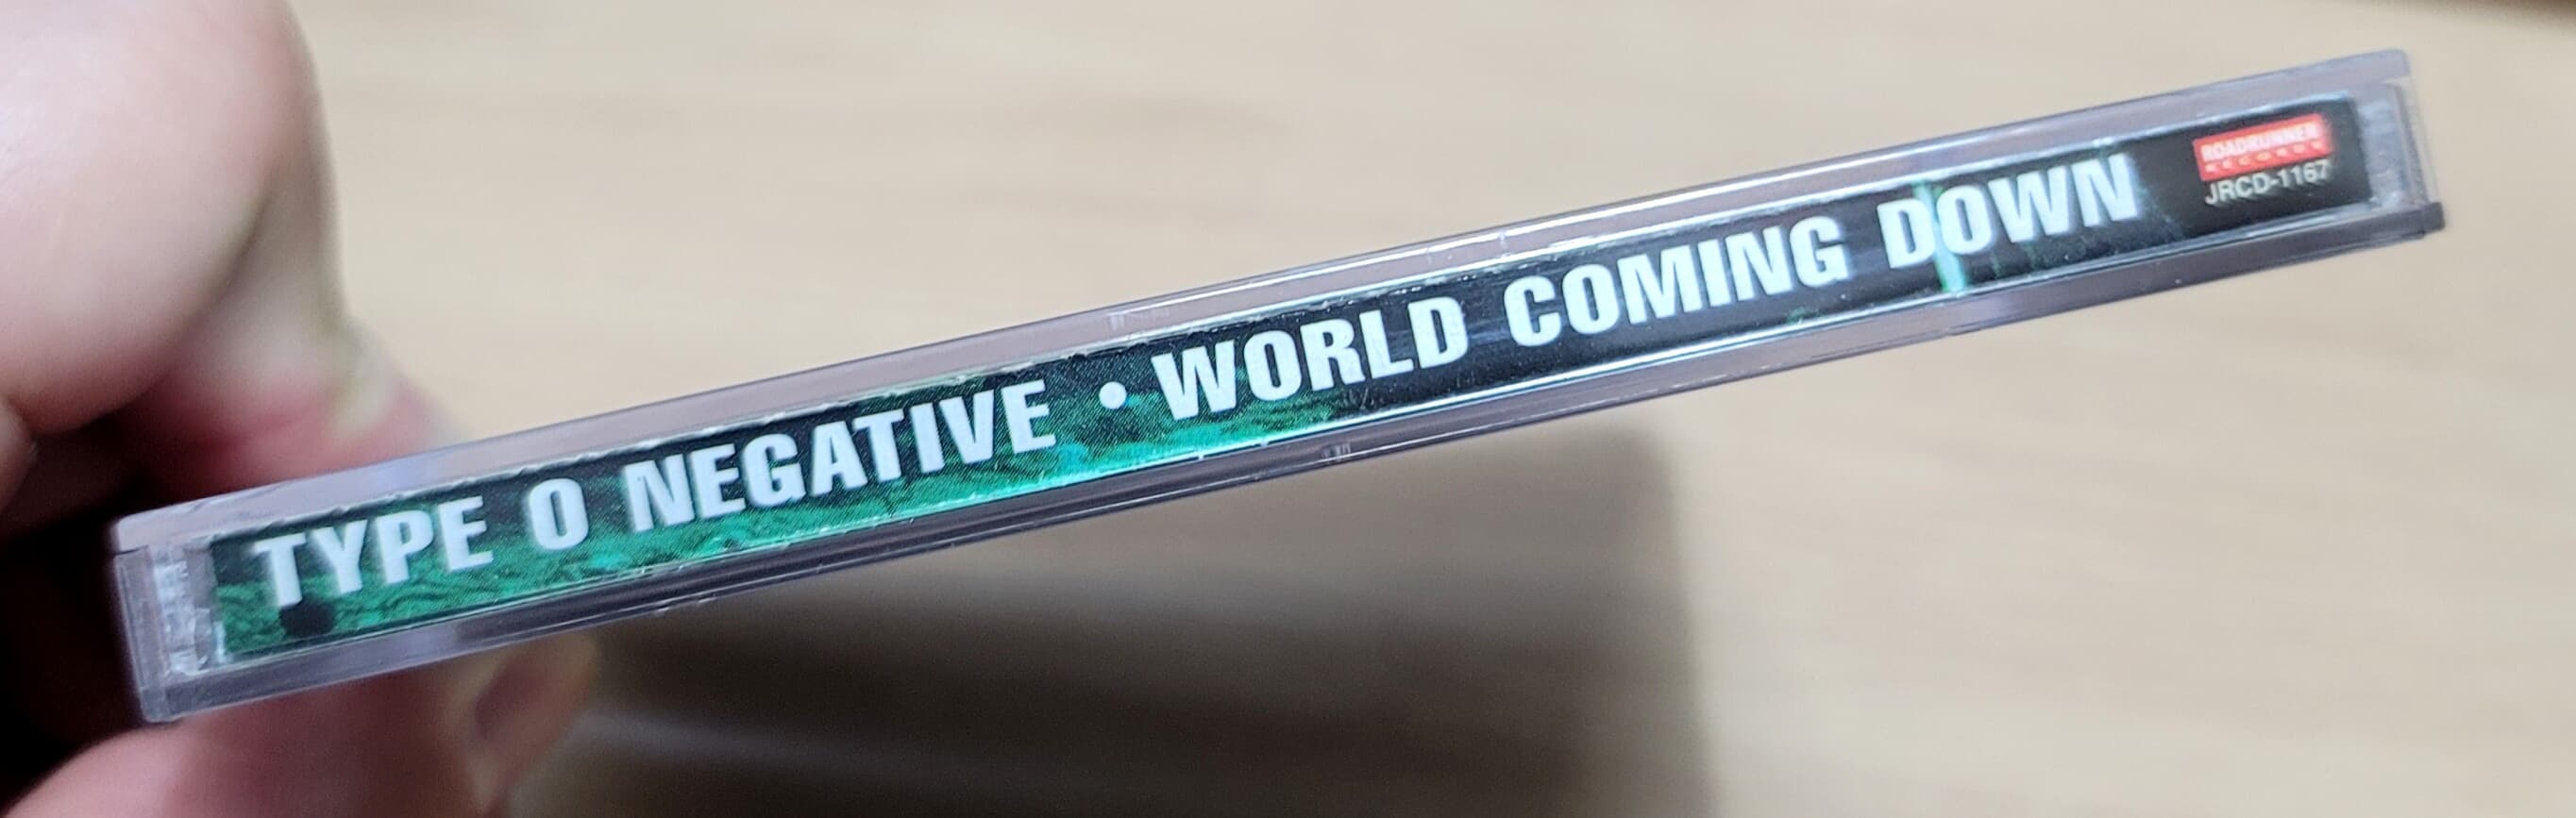 (지구레코드 초판) Type O Negative - World Coming Down